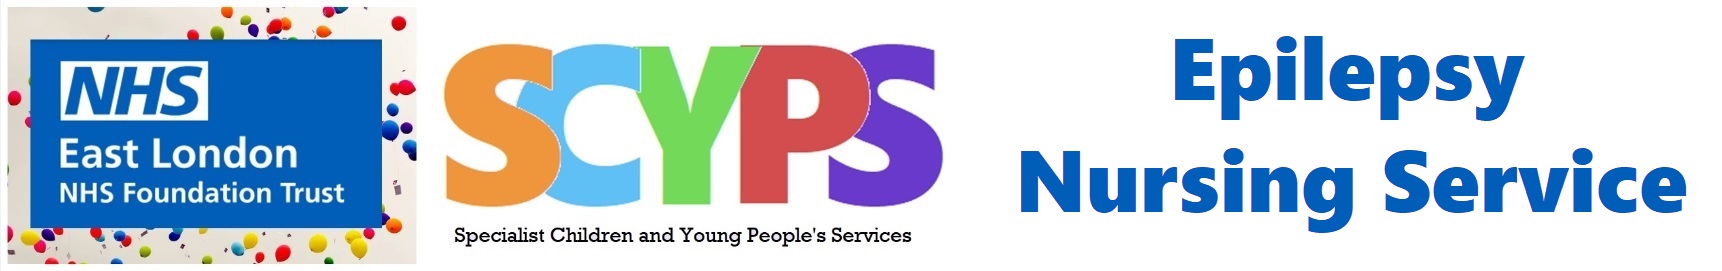 SCYPS Epilepsy Nursing Service Banner